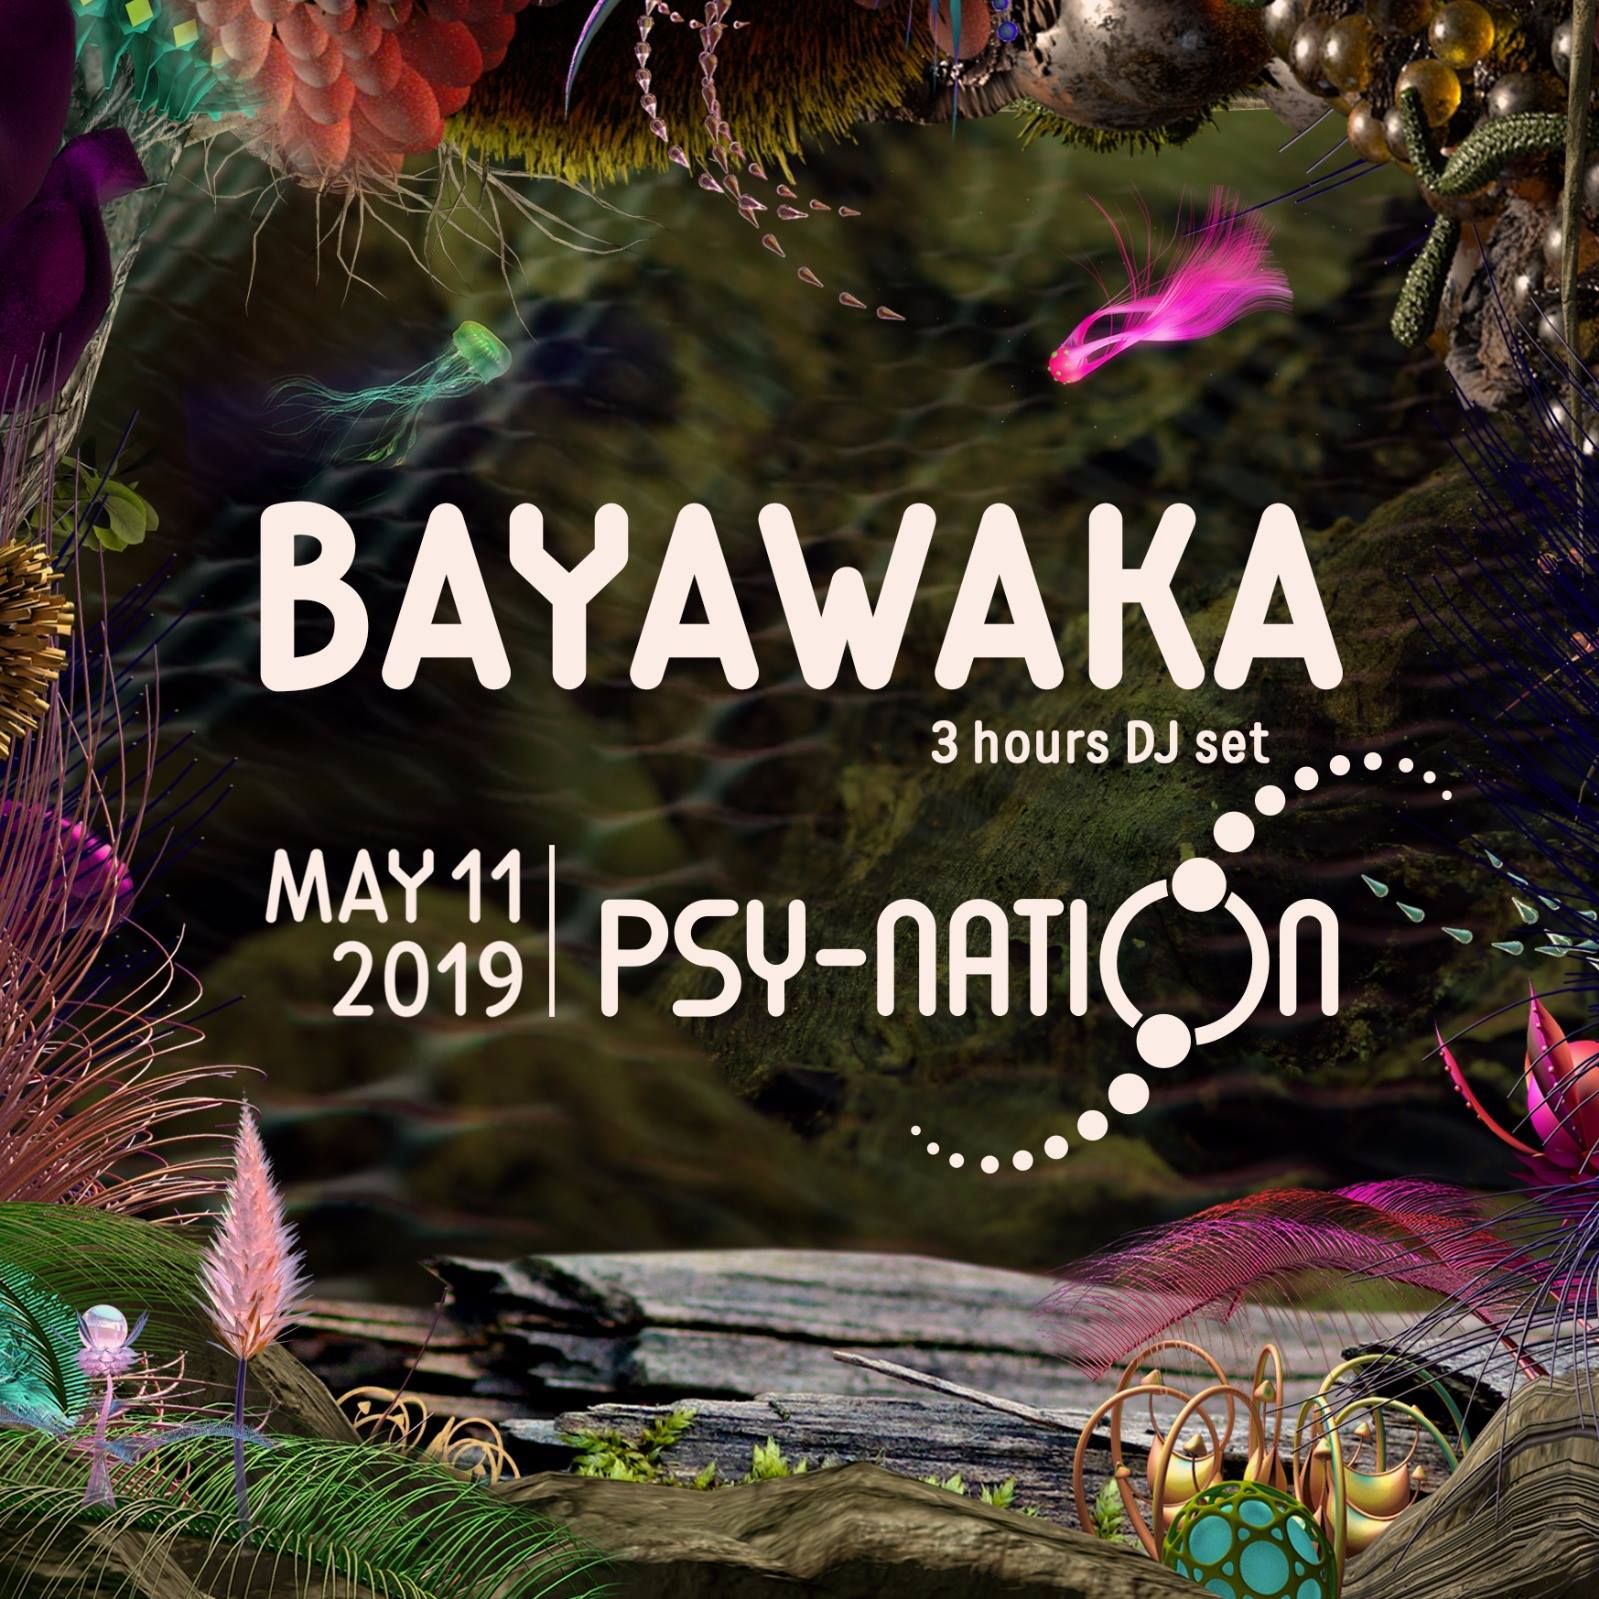 Stažení DJ Bayawaka - Psy-Nation Denmark Warm Up Set